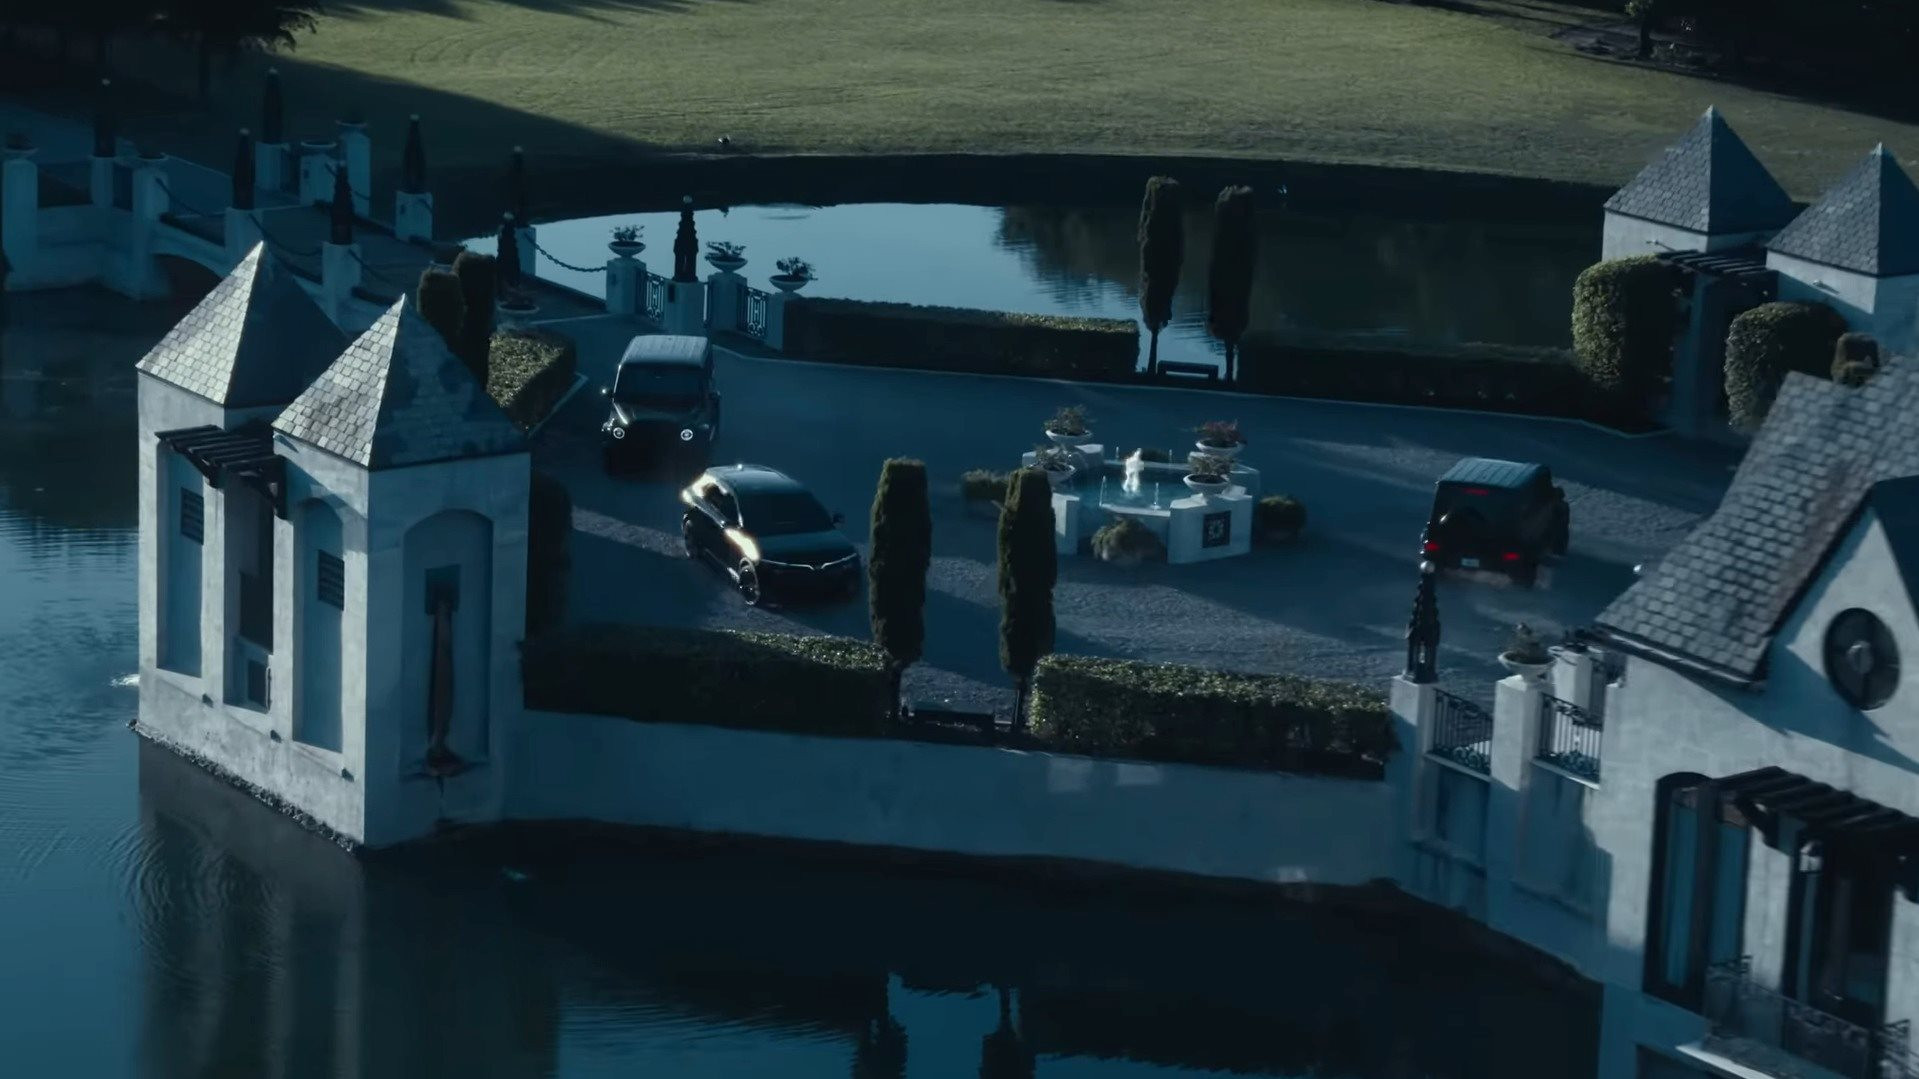 VinFast VF 8 xuất hiện cực ngầu trong MV ca nhạc của 'ông hoàng tỷ view' J Balvin, được hộ tống bằng 2 chiếc Mercedes G63- Ảnh 1.